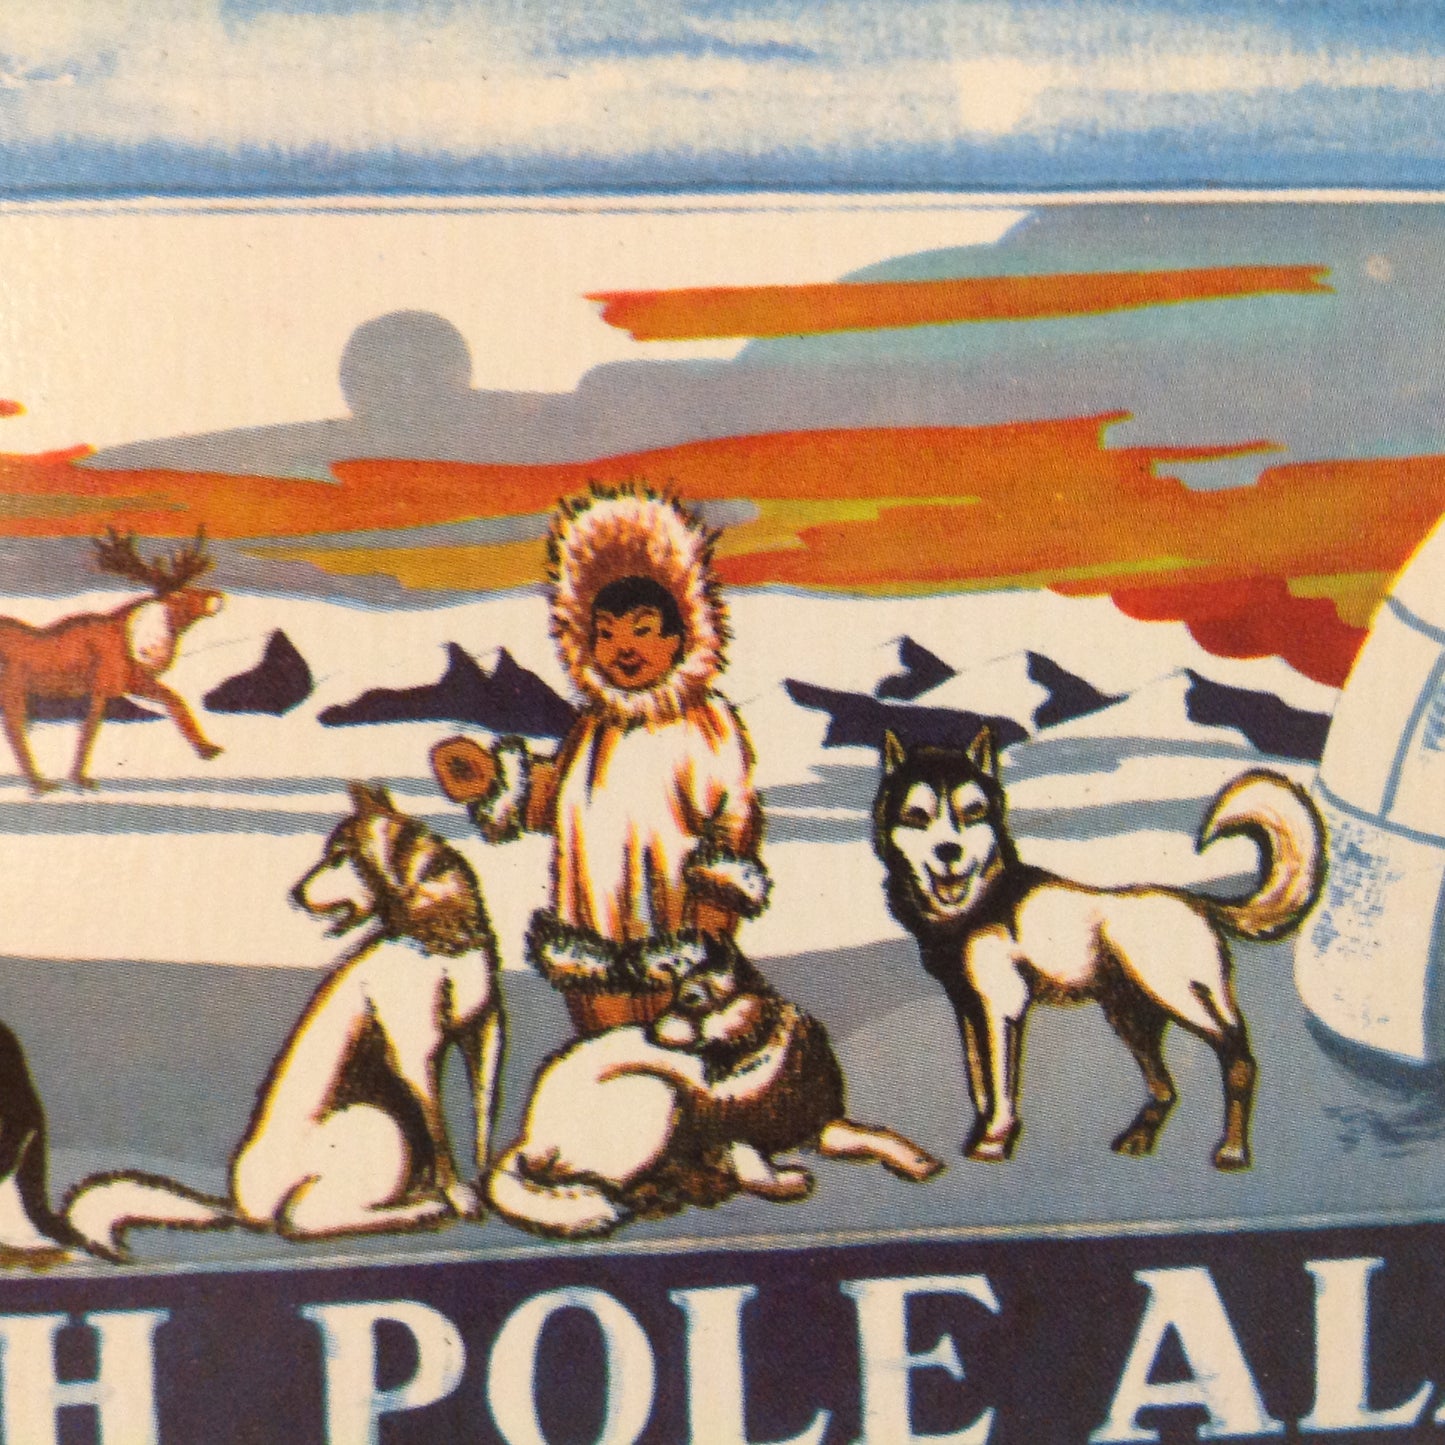 Vintage Color Postcard Eskimo Igloo Huskies Painting at Santa Claus House Sent From North Pole Alaska